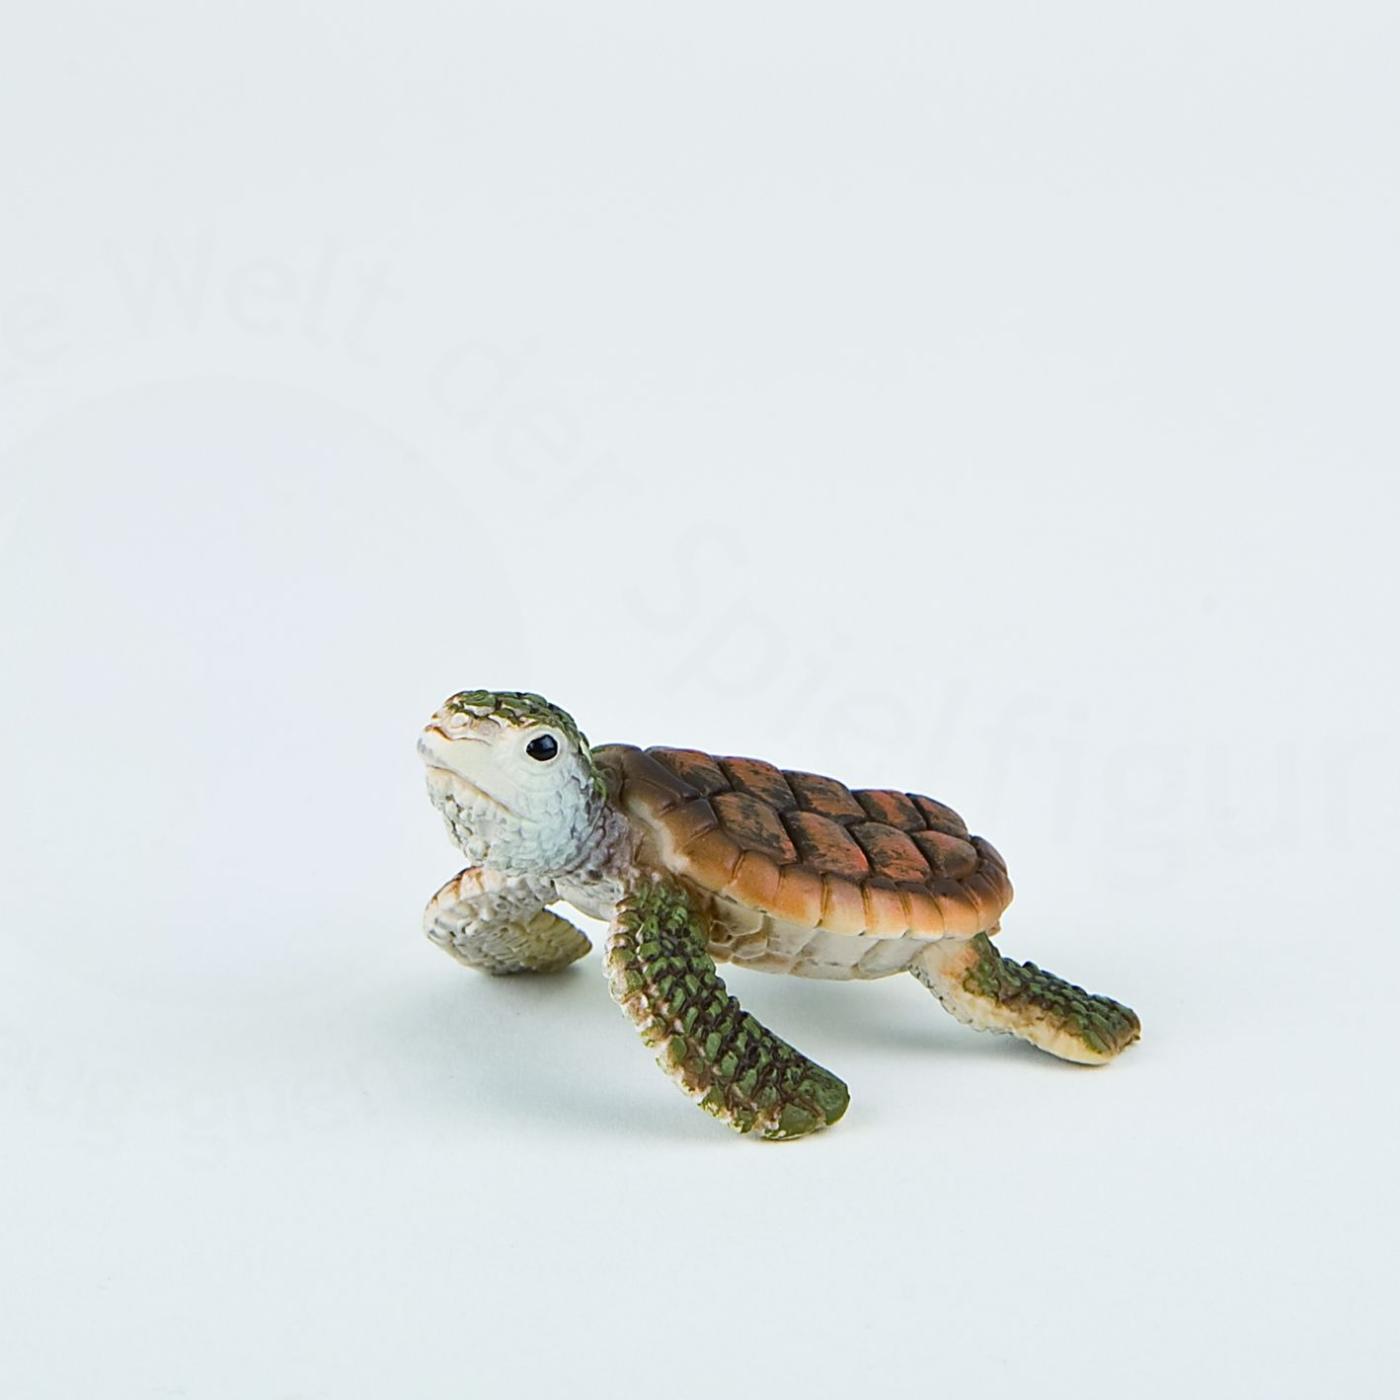 sea turtle figures